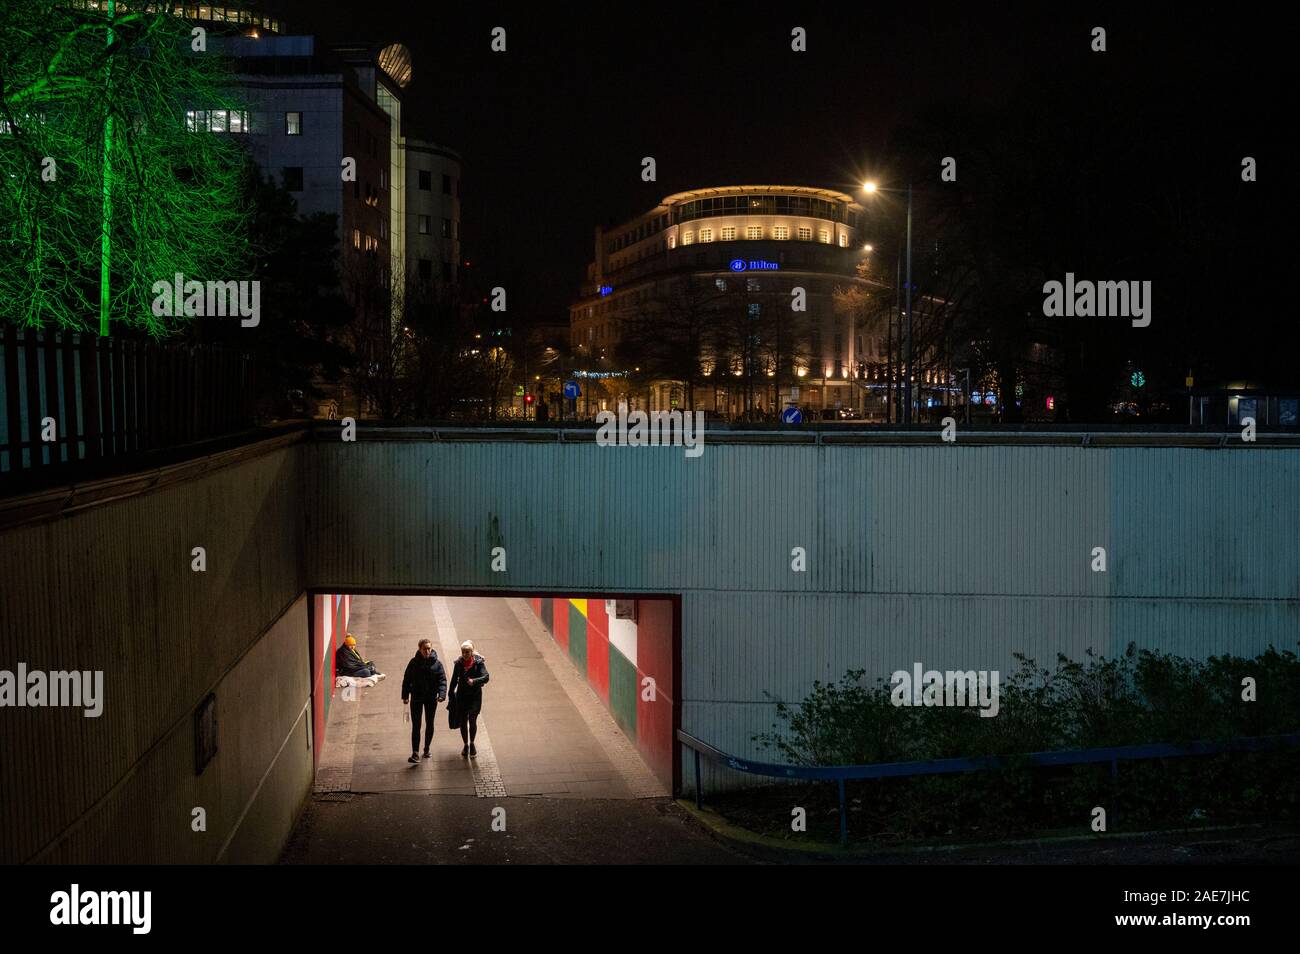 Due lati di una città. Il fenomeno dei senzatetto a fianco di affluenza, un sito comune nella maggior parte delle città britanniche in questi giorni. Foto Stock